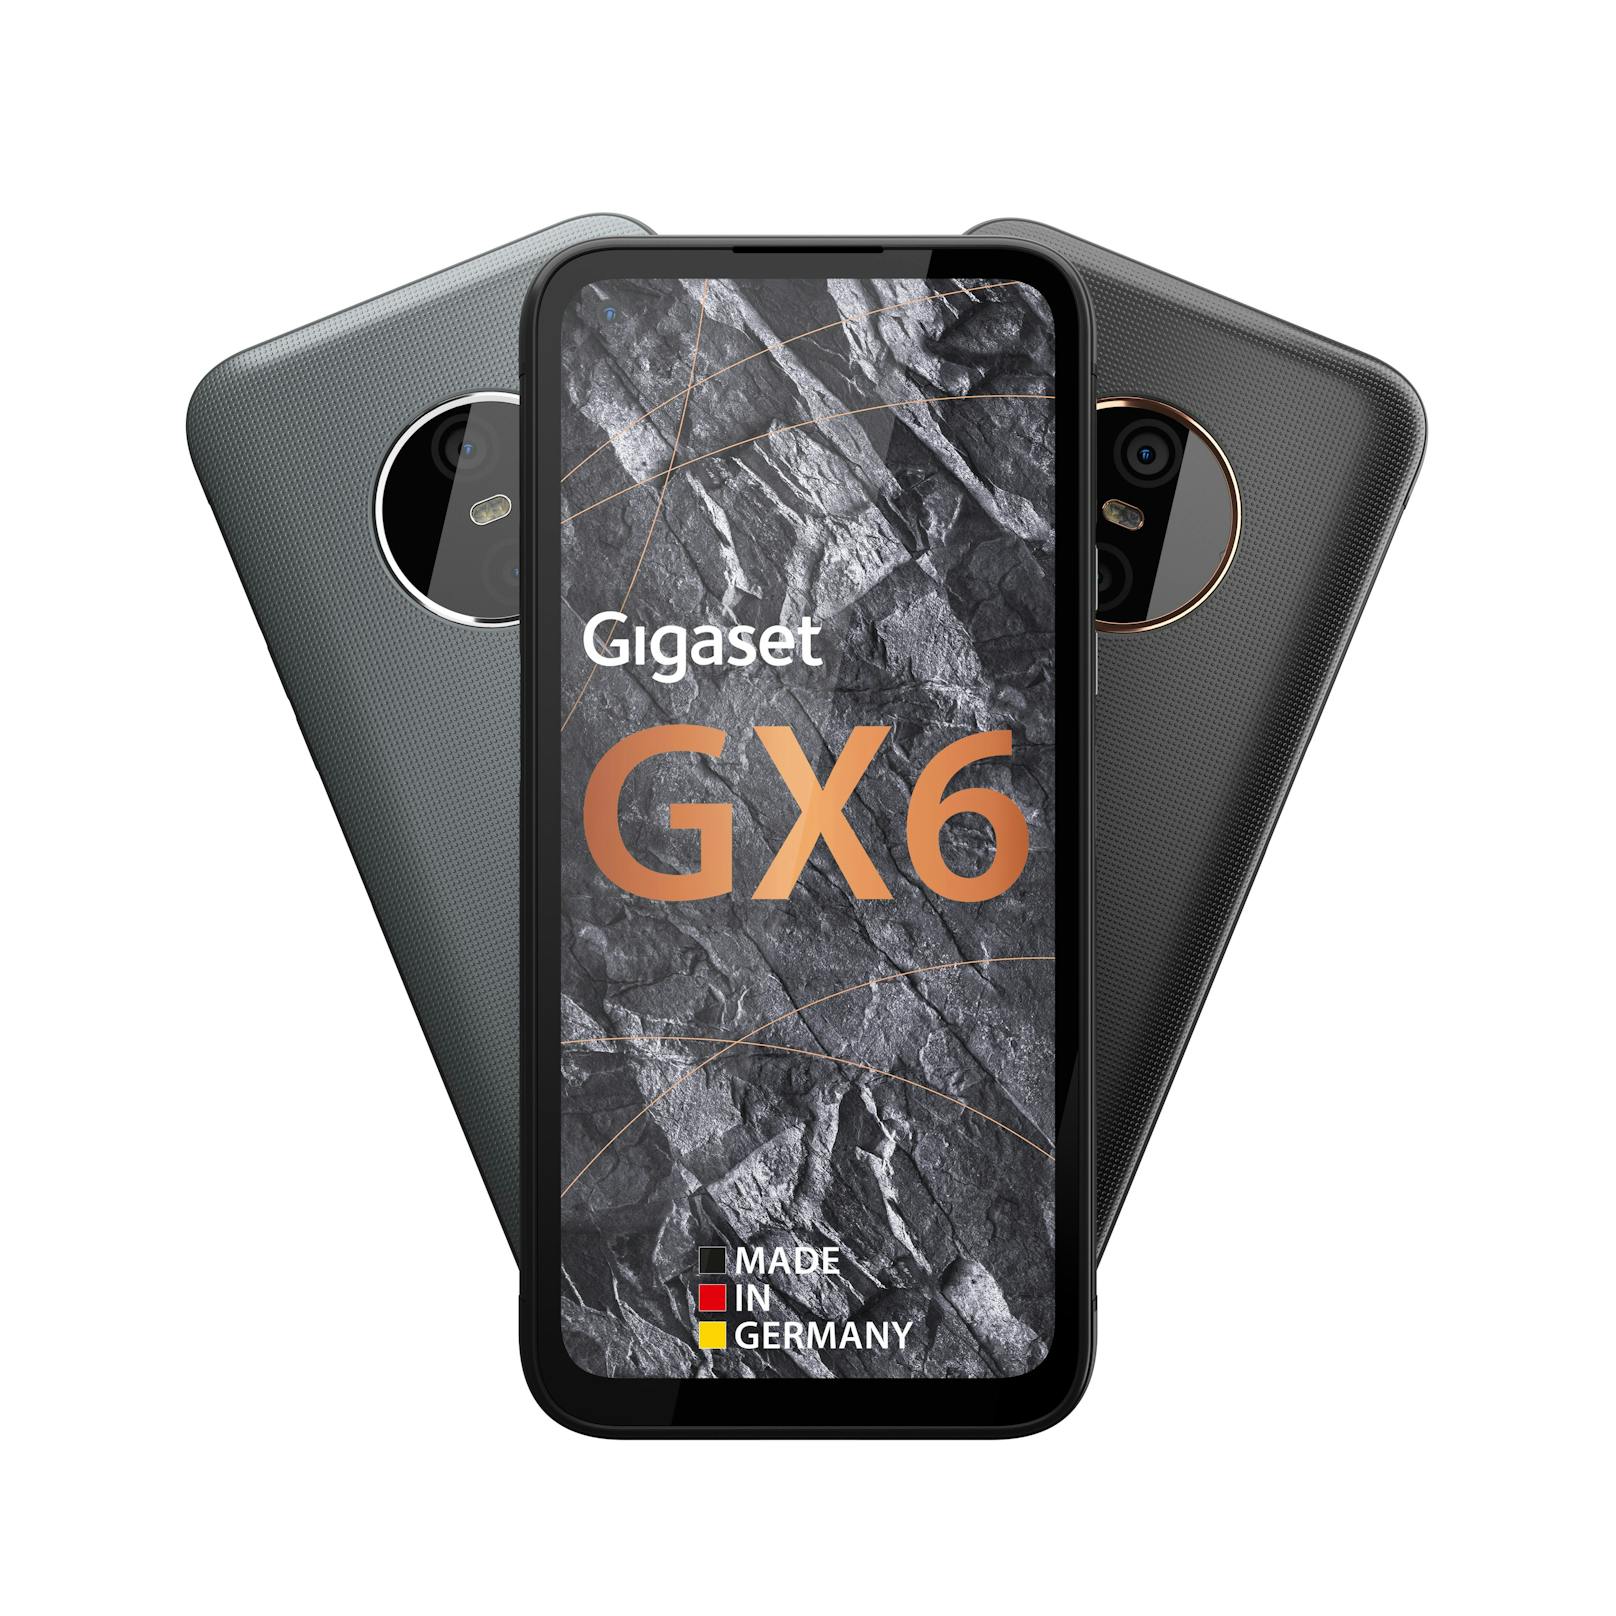 Das neue 5G Business-Smartphone Gigaset GX6 Pro.